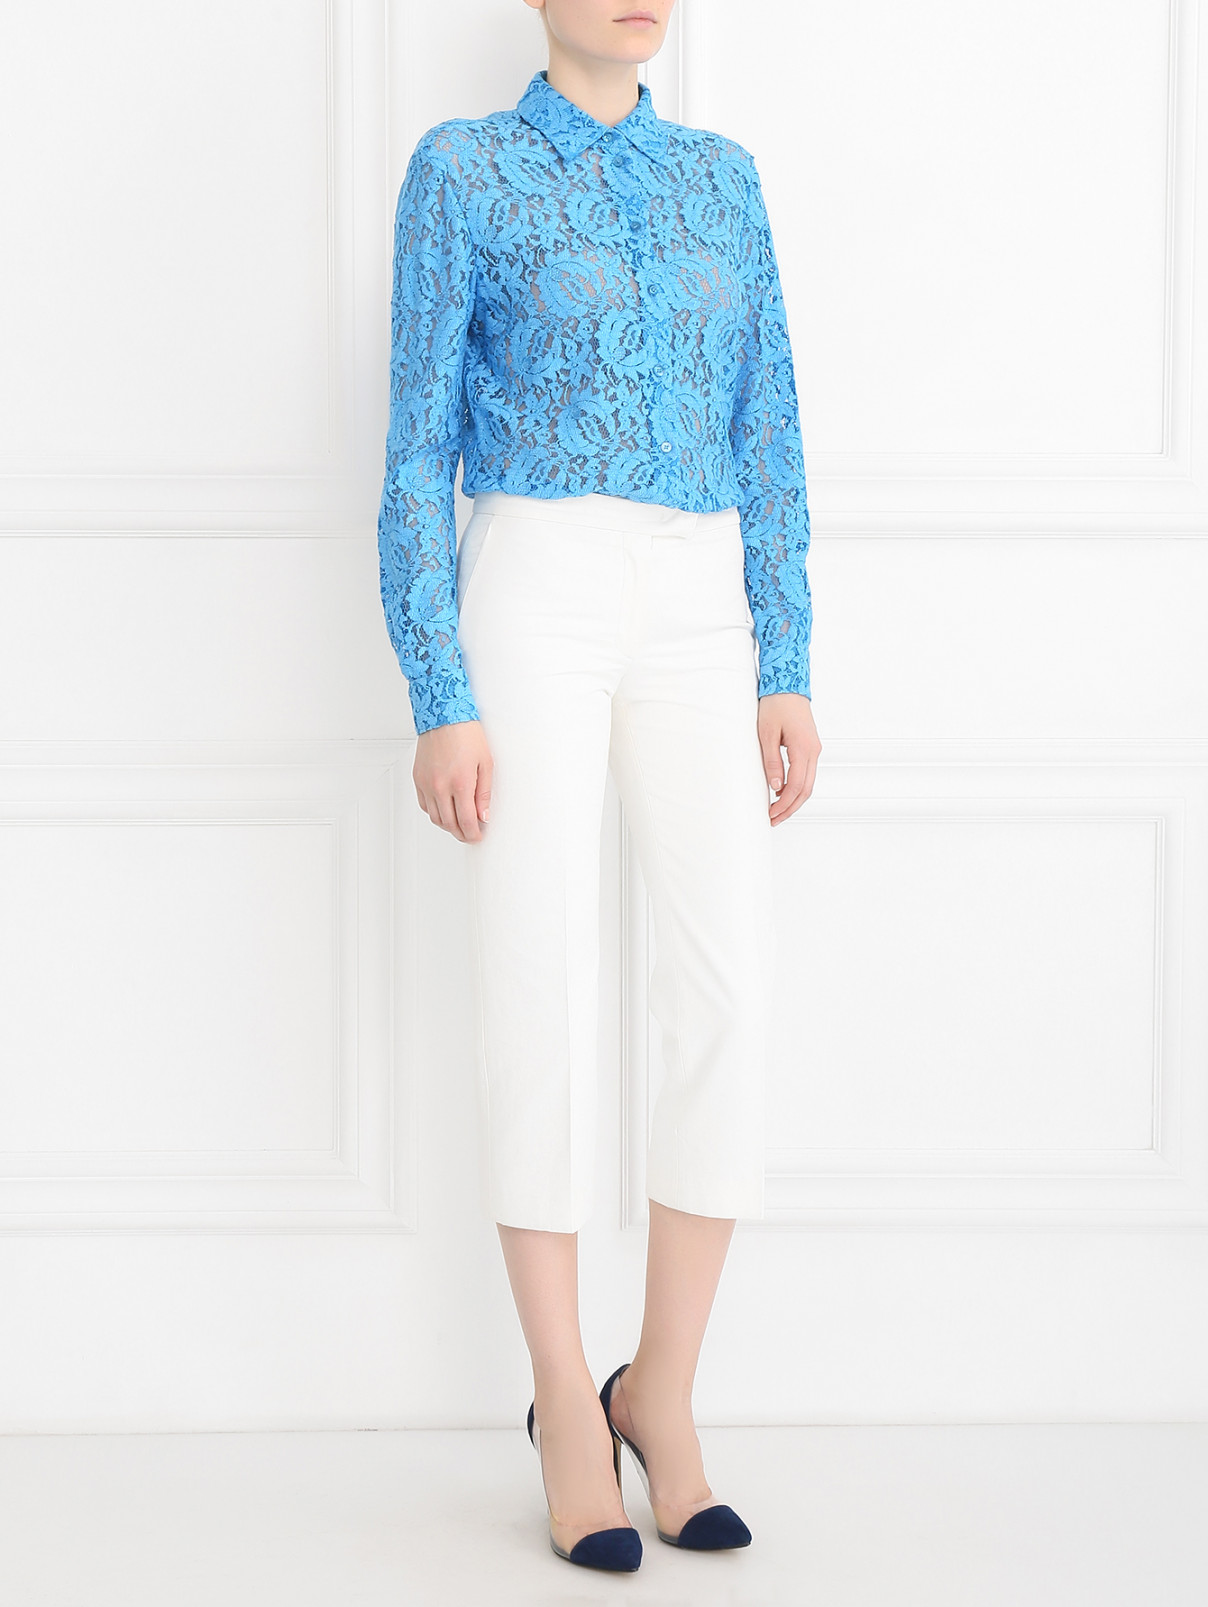 Блуза с кружевным узором Moschino Couture  –  Модель Общий вид  – Цвет:  Синий